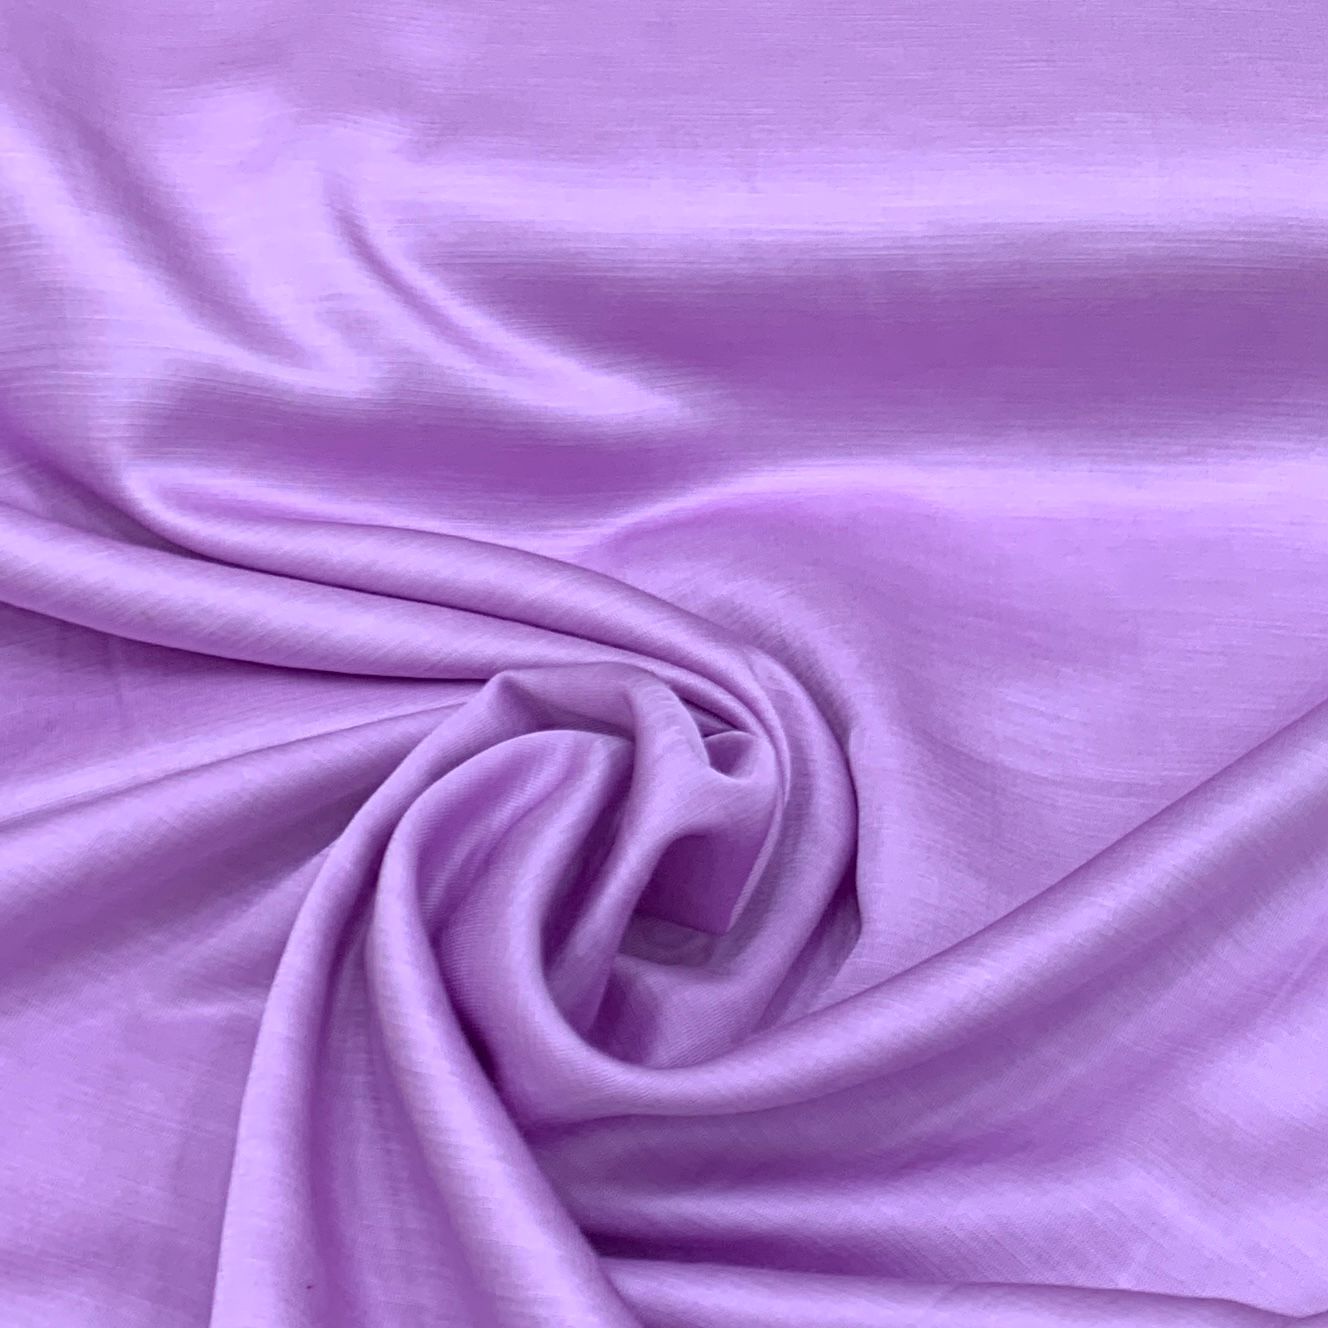 Lavender Silky Stretch Satin